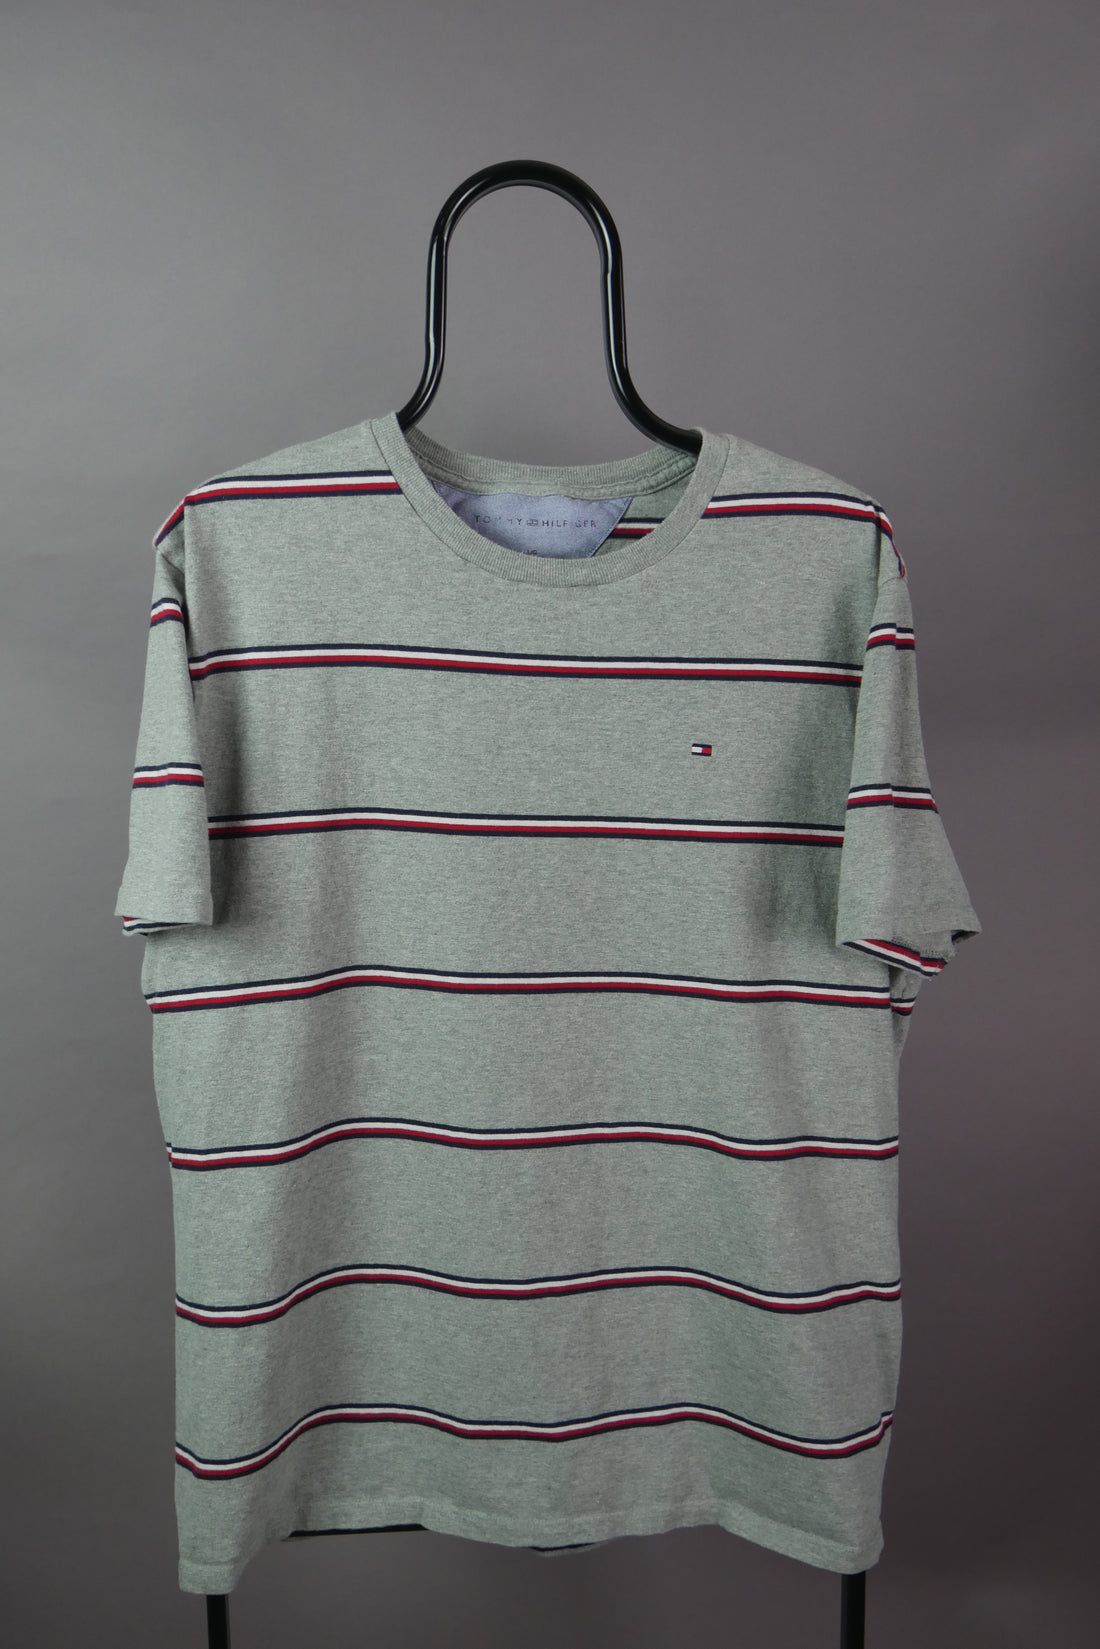 The Tommy Hilfiger Striped T-Shirt (L)